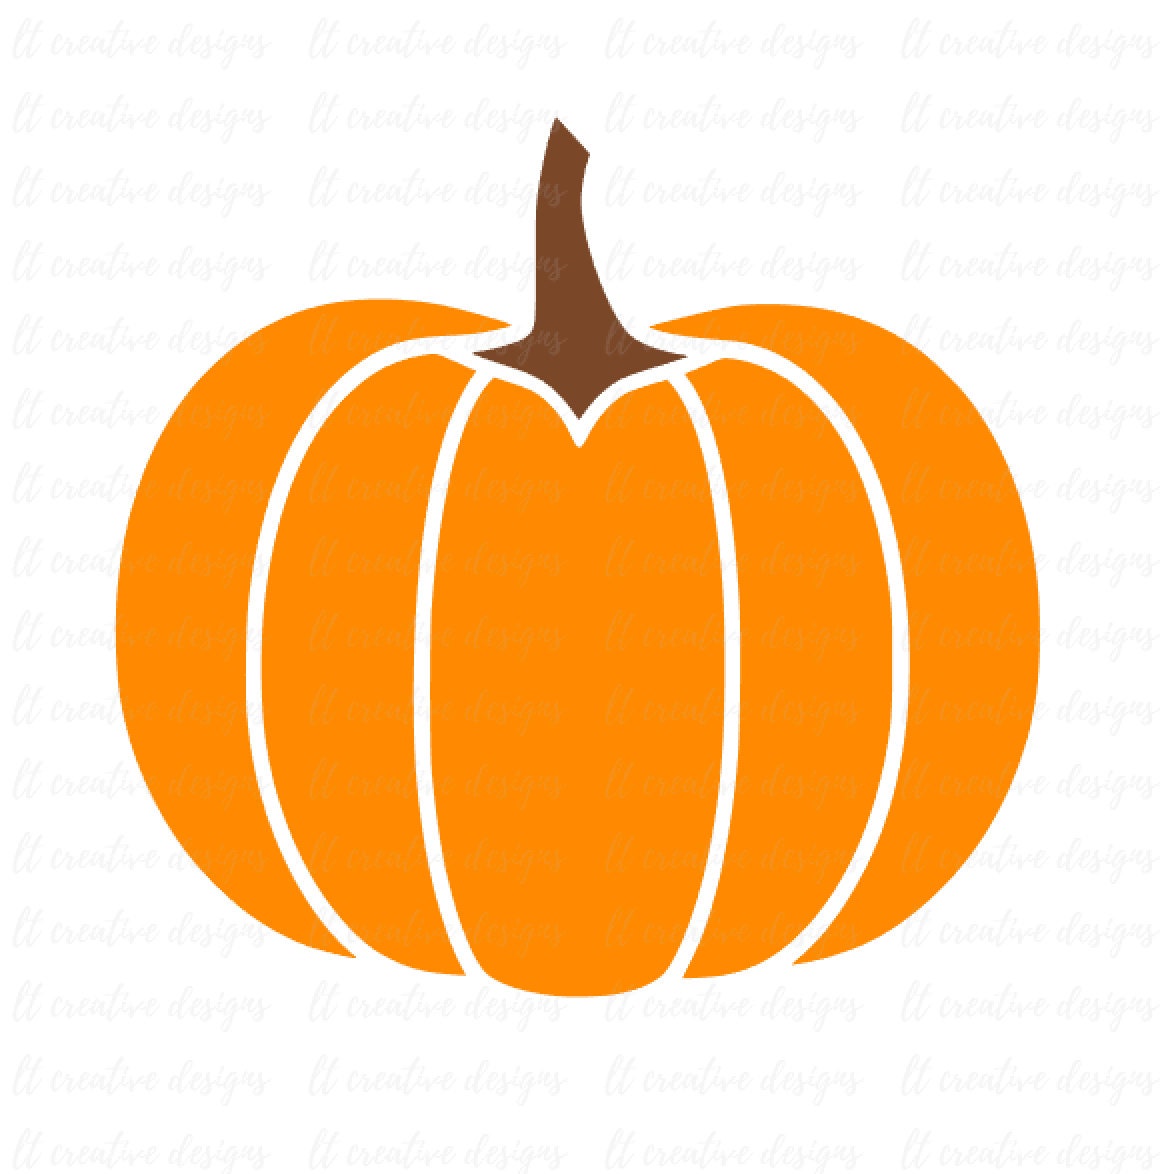 Download Pumpkin SVG, Pumpkin, Fall Pumpkin SVG, Pumpkin Outline ...